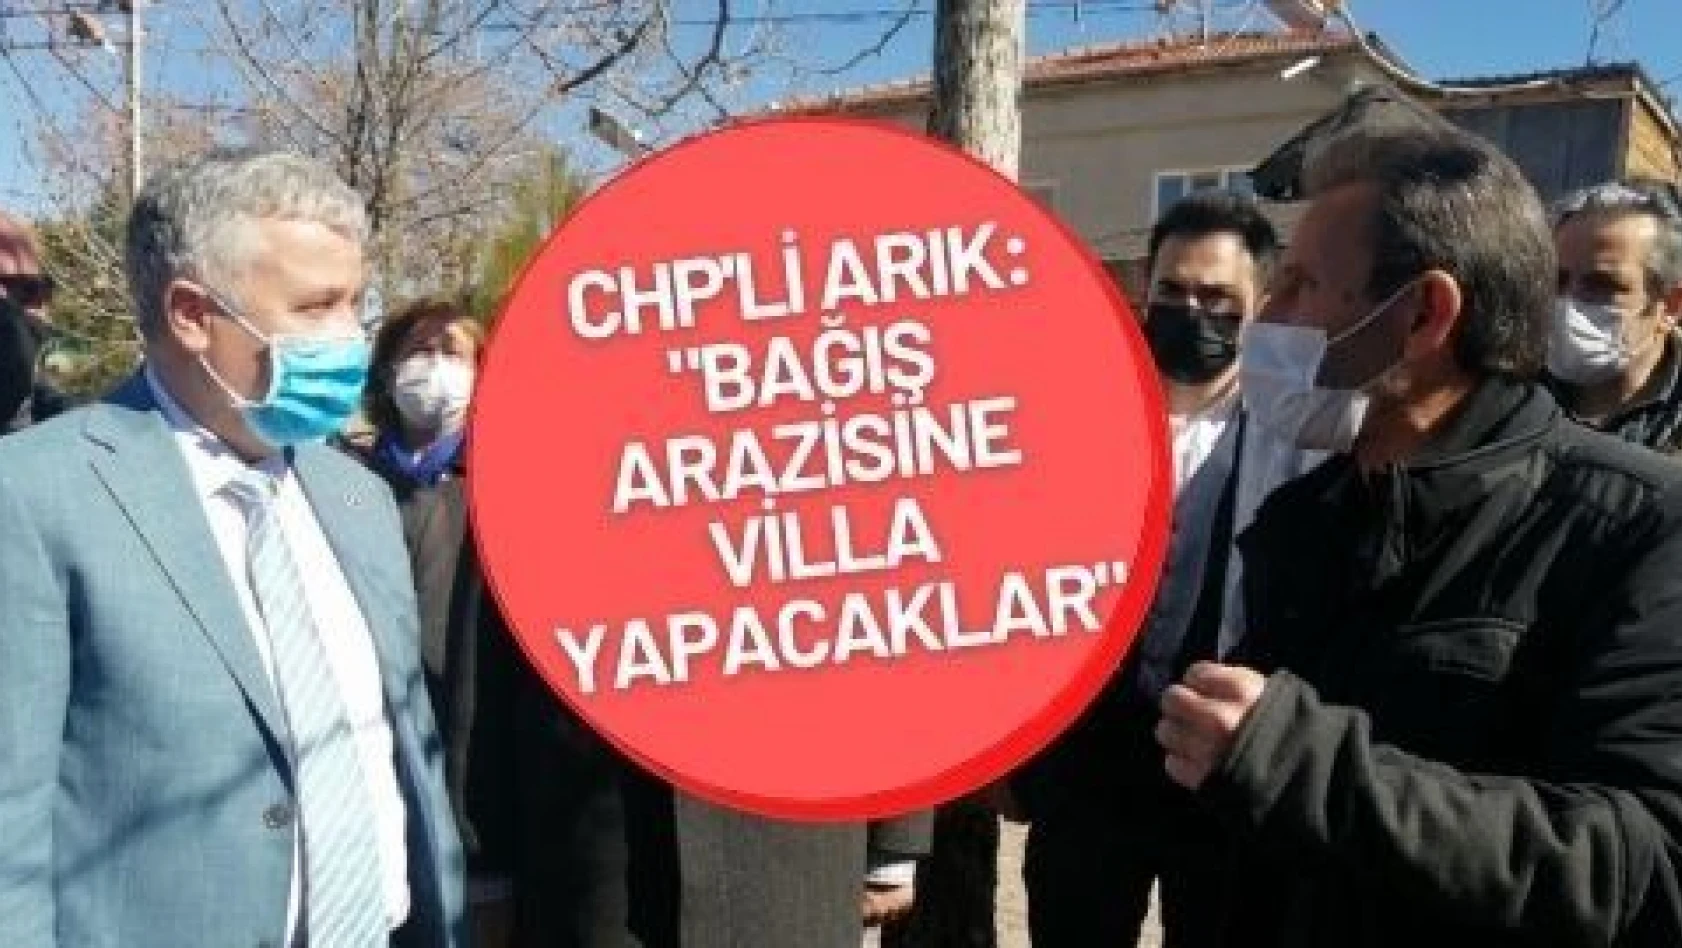 CHP 'li Arık 'tan bağış arazisine villa iddiası